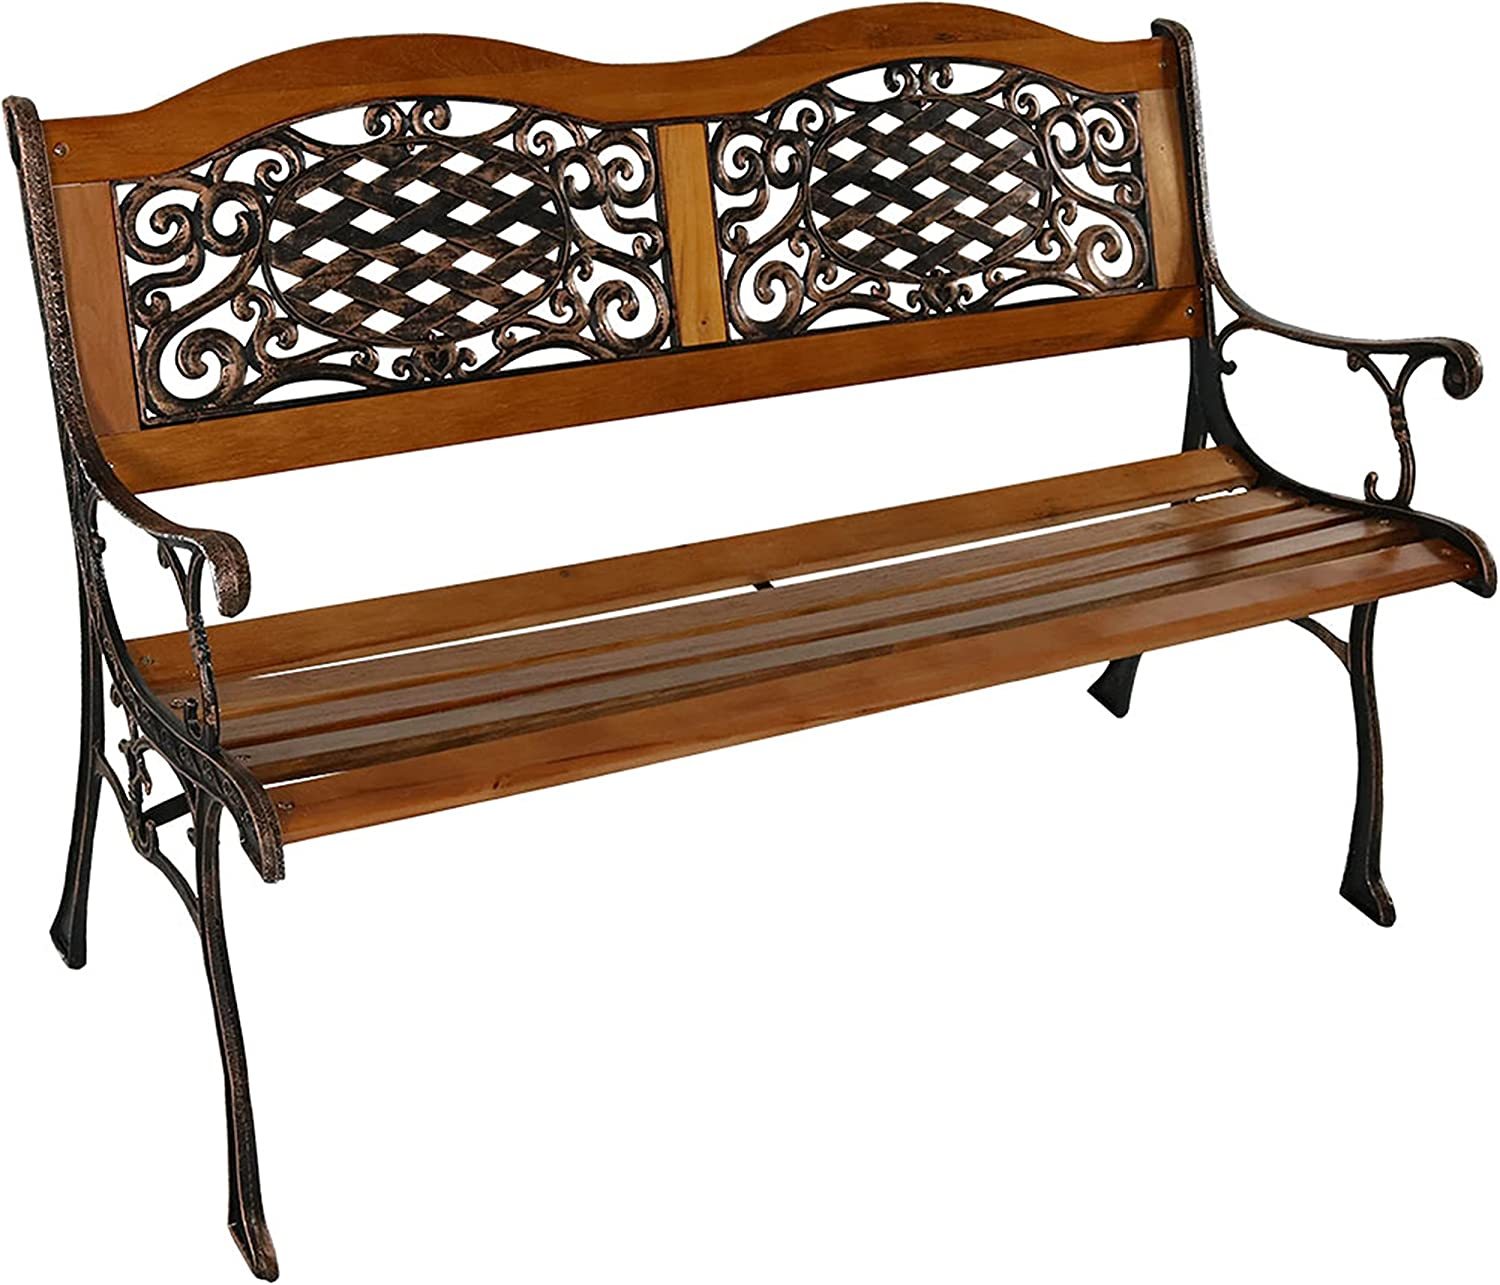 Sunnydaze 2-Person Garden Bench - Cast Iron and Wood Frame, Backyard or Garden - $240.99